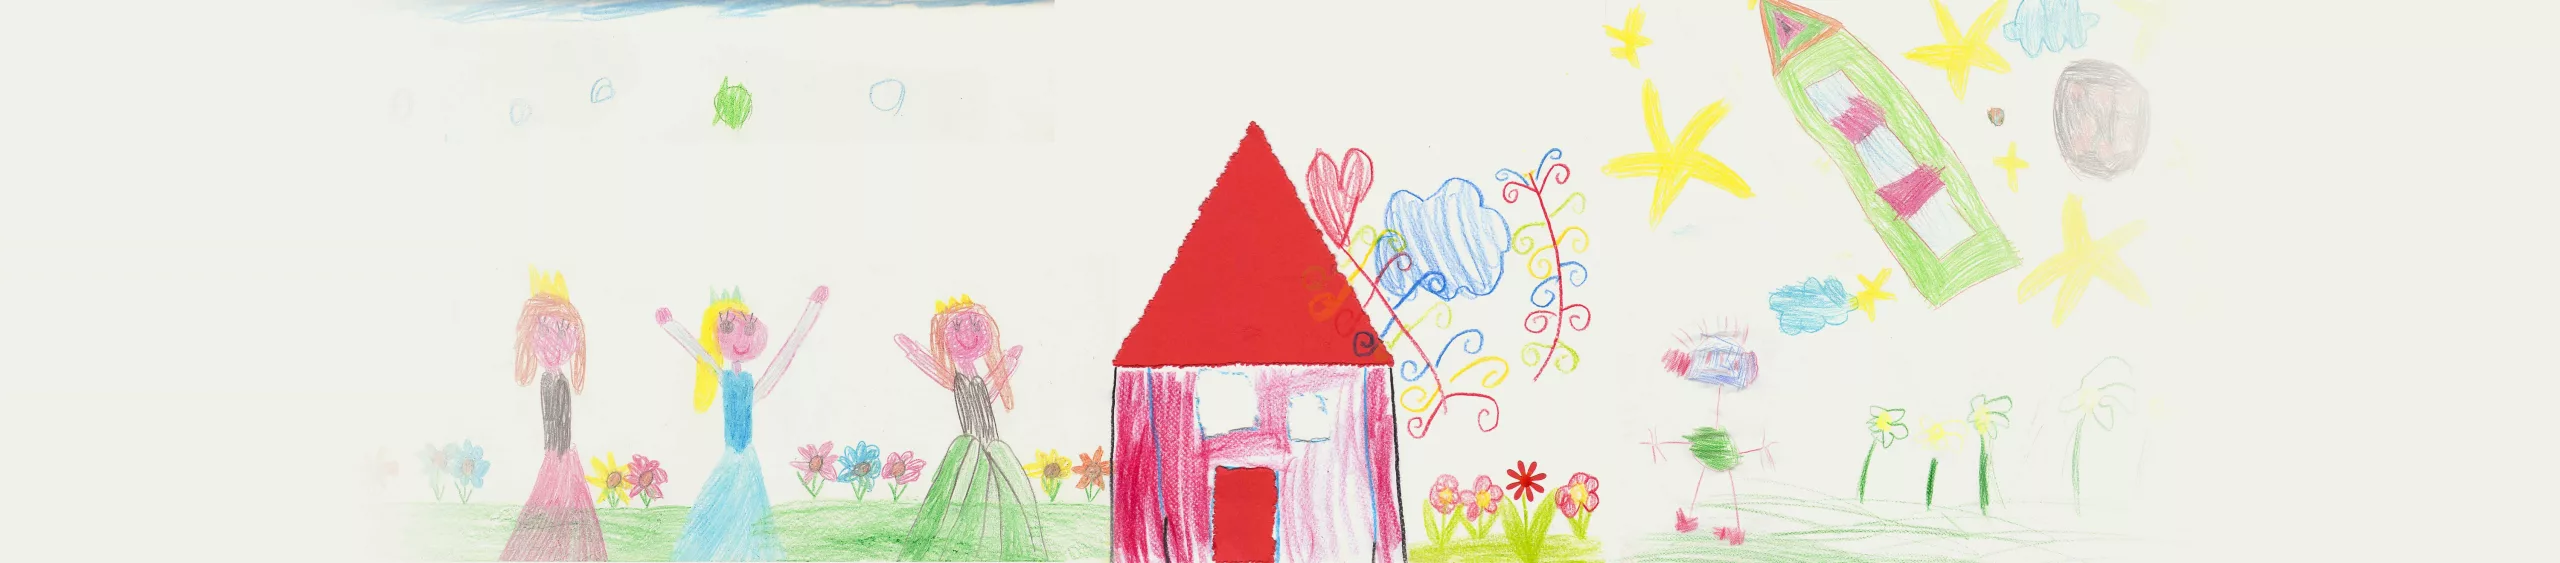 Herzlich Willkommen in der Kindertagesstätte "Haus der kleinen Künstler"